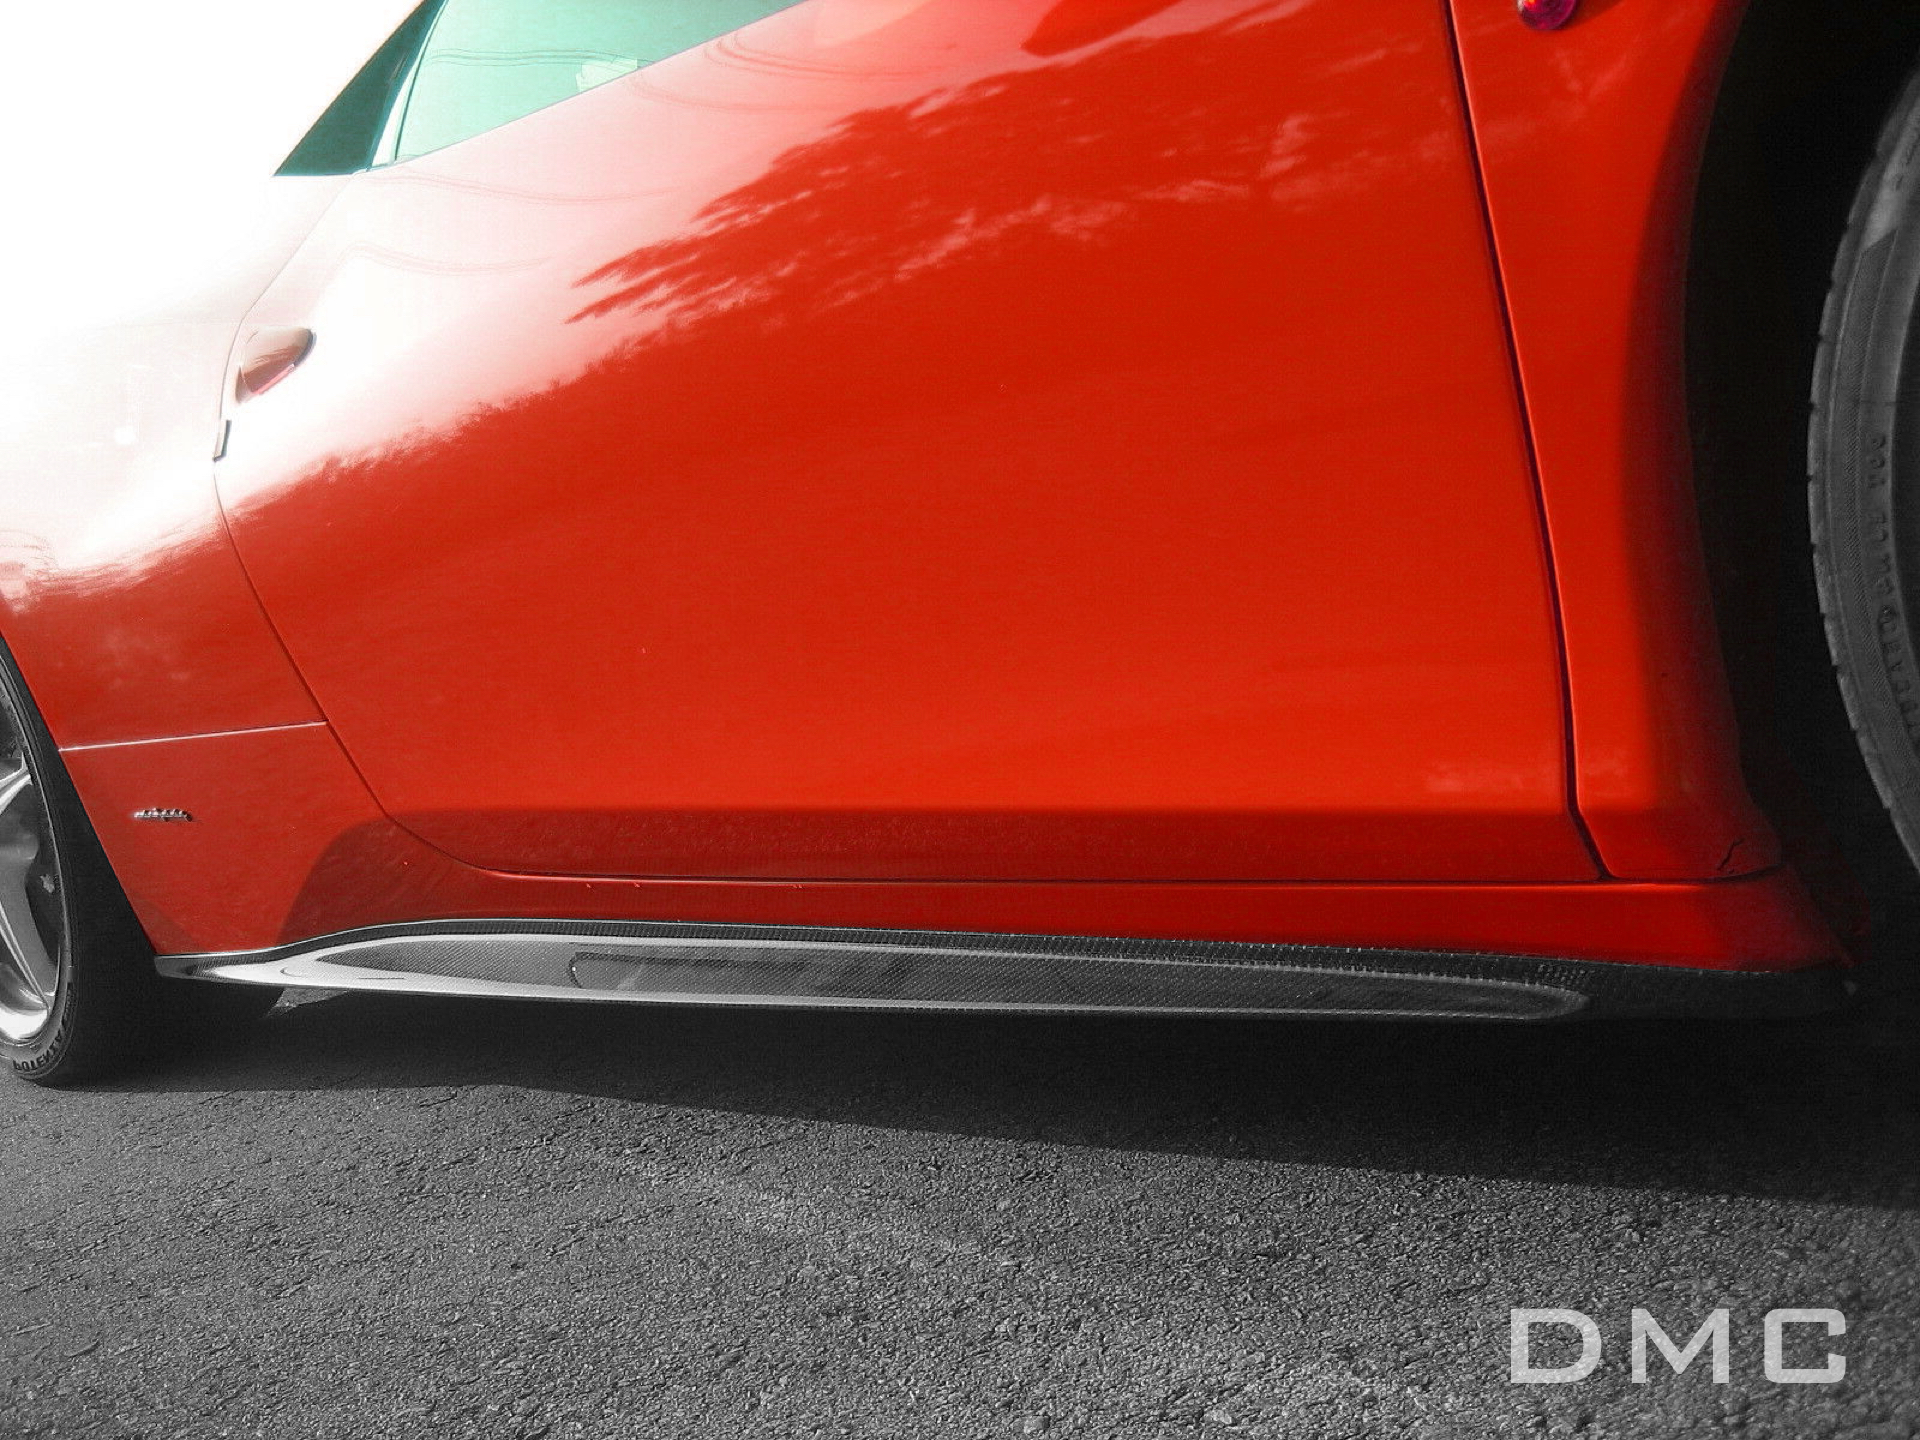 未使用品】 車 外装 For Ferrari 458 Italia Carbon Fiber DMC Style Rear Diffuser Fin  Replacement Glossy F